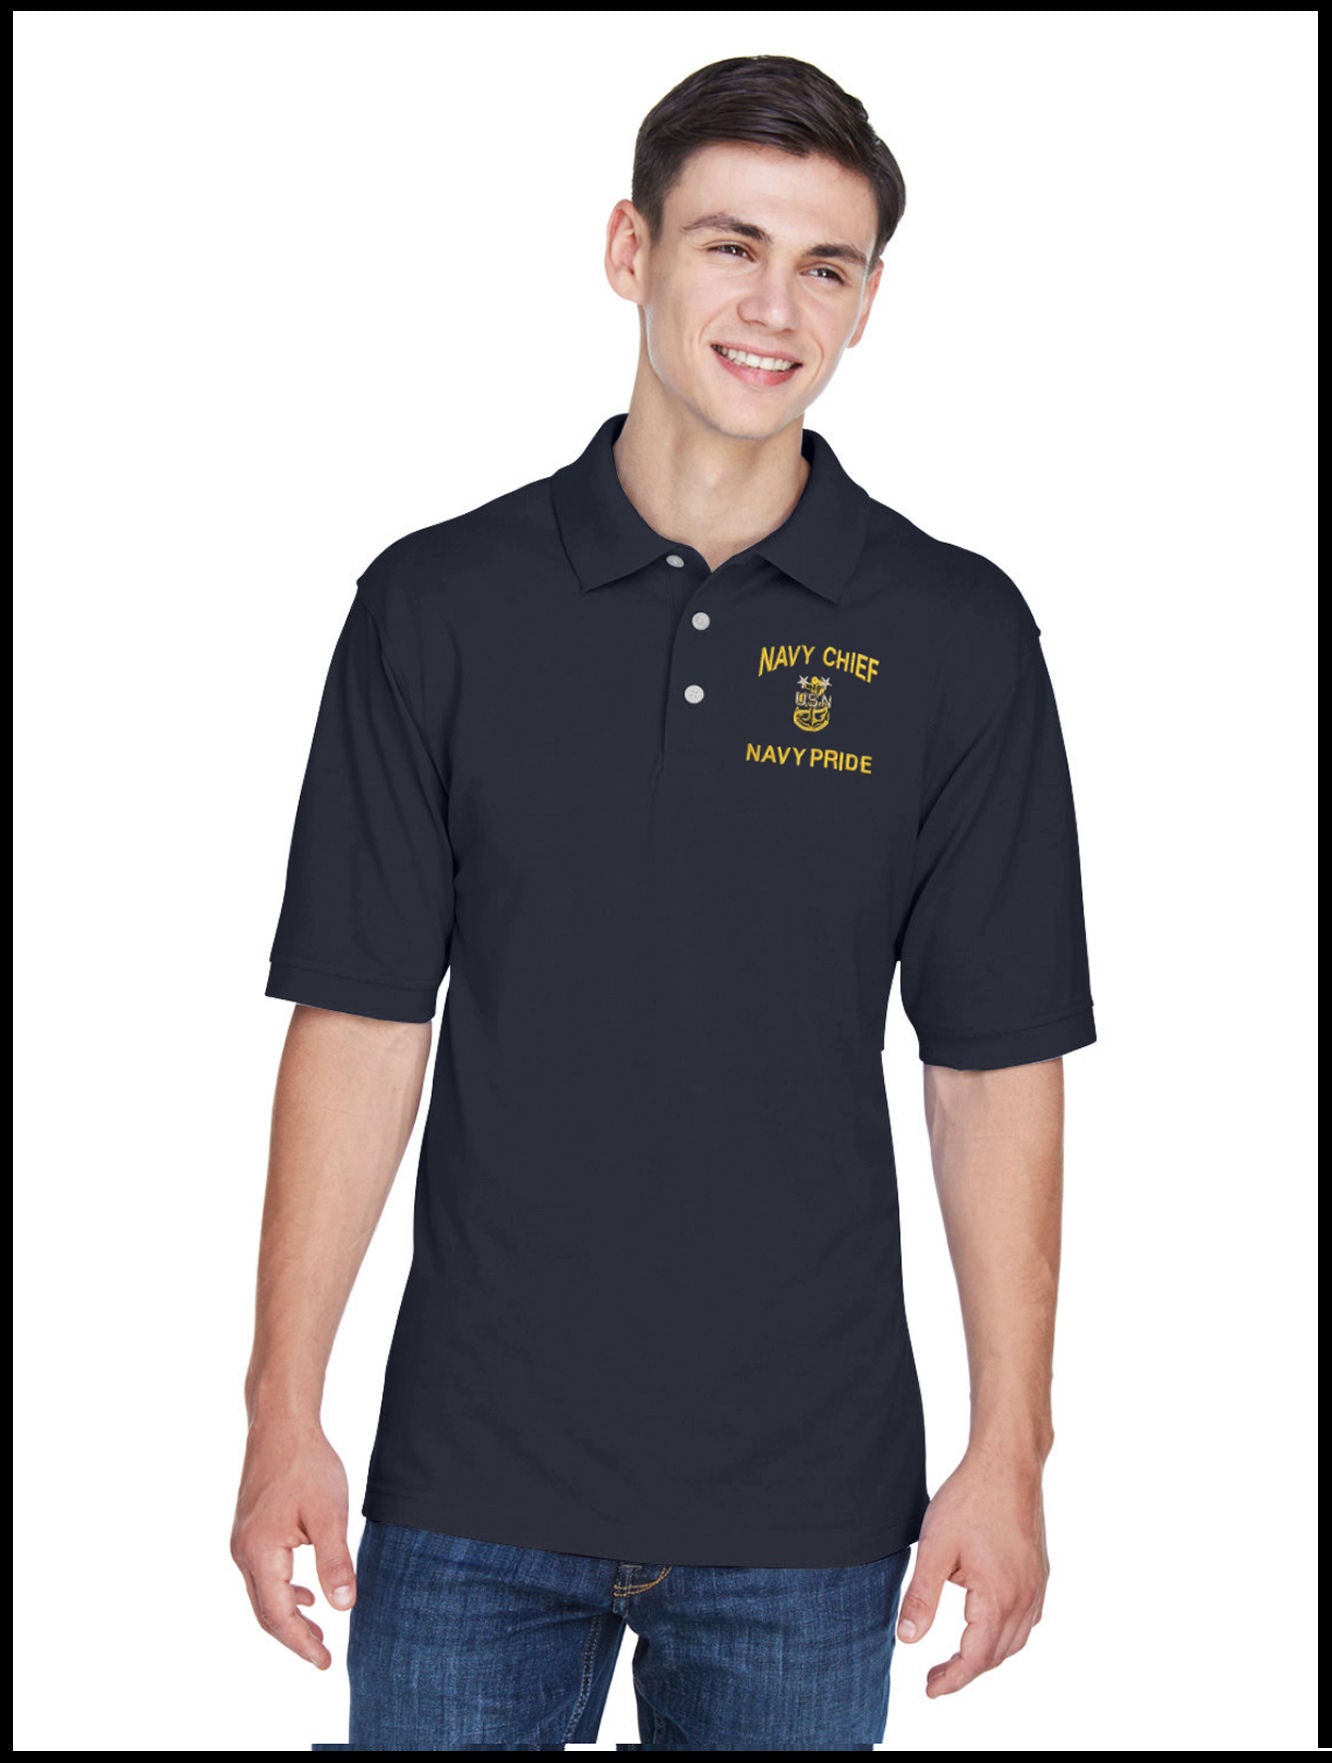 CPO Navy Chief, Navy Pride Navy Blue Polo Shirt 1 Anchor